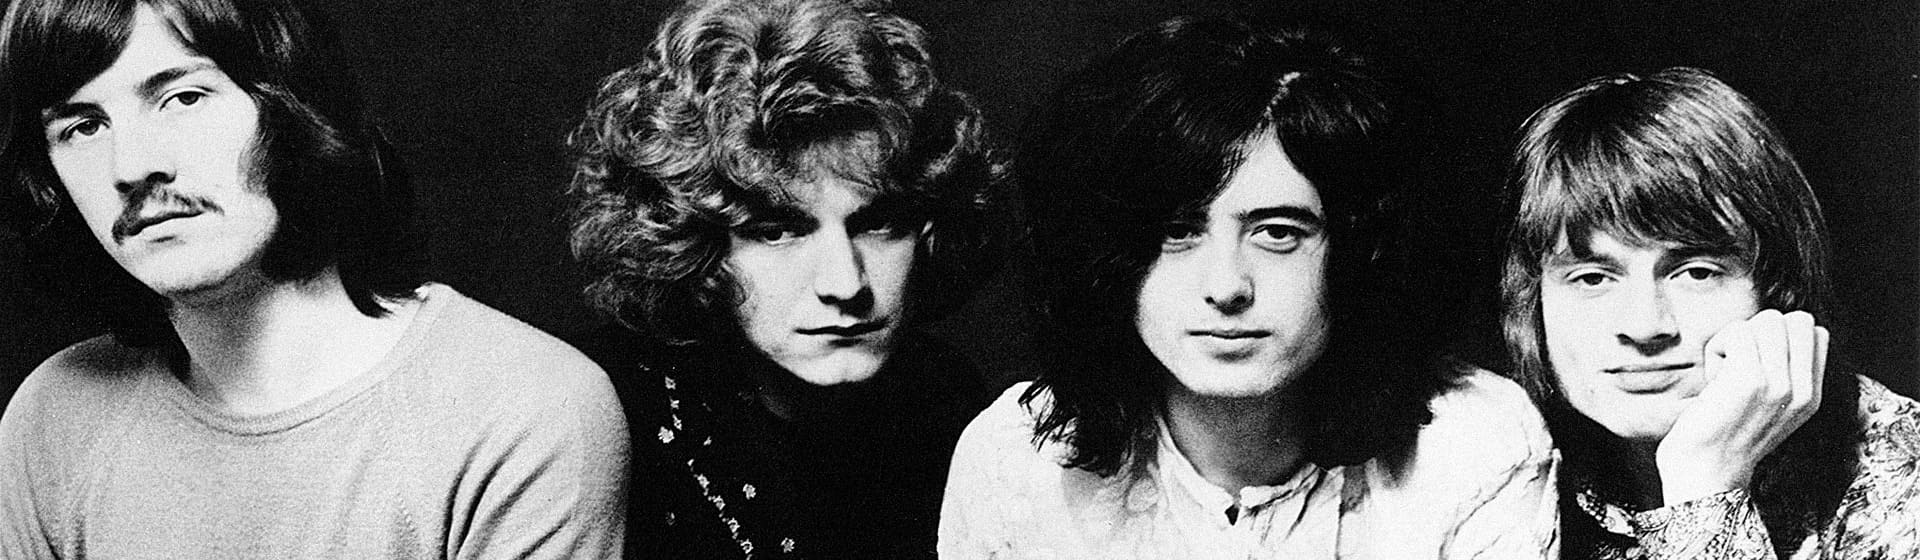 Led Zeppelin - Мерч и одежда с атрибутикой